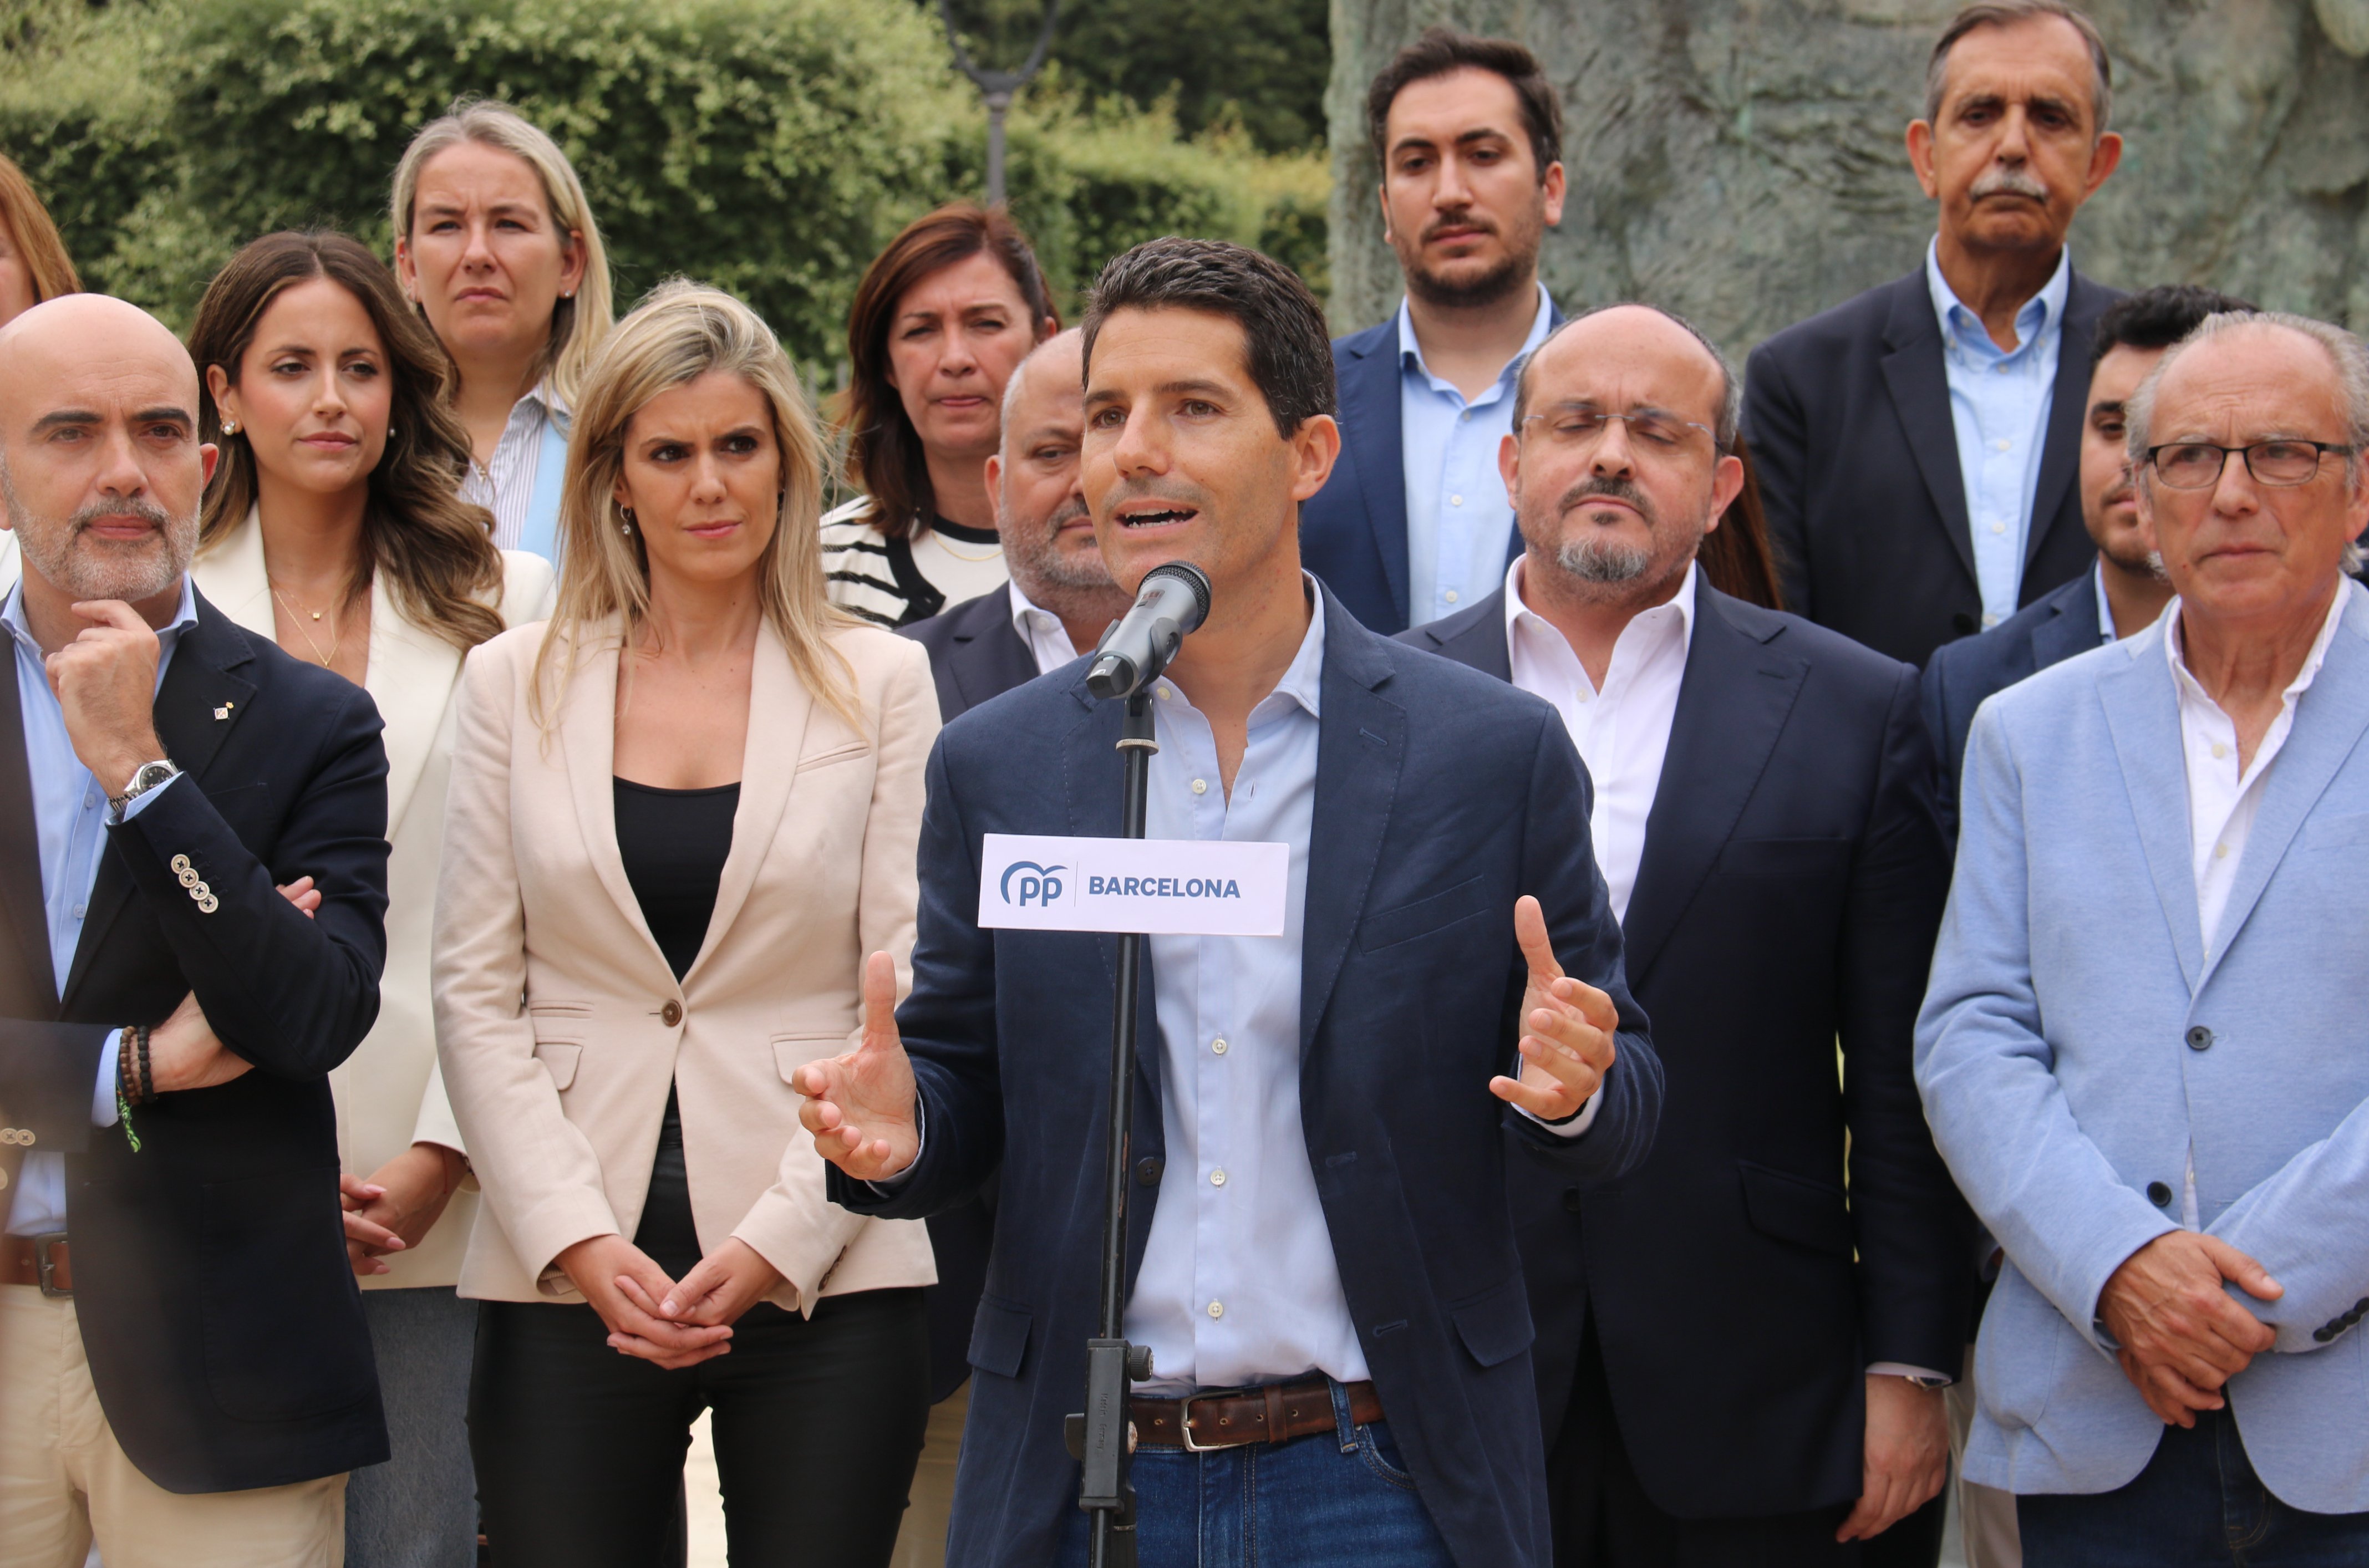 El PP nega converses obertes per la Diputació de Barcelona, però afegeix: "El temps dirà"